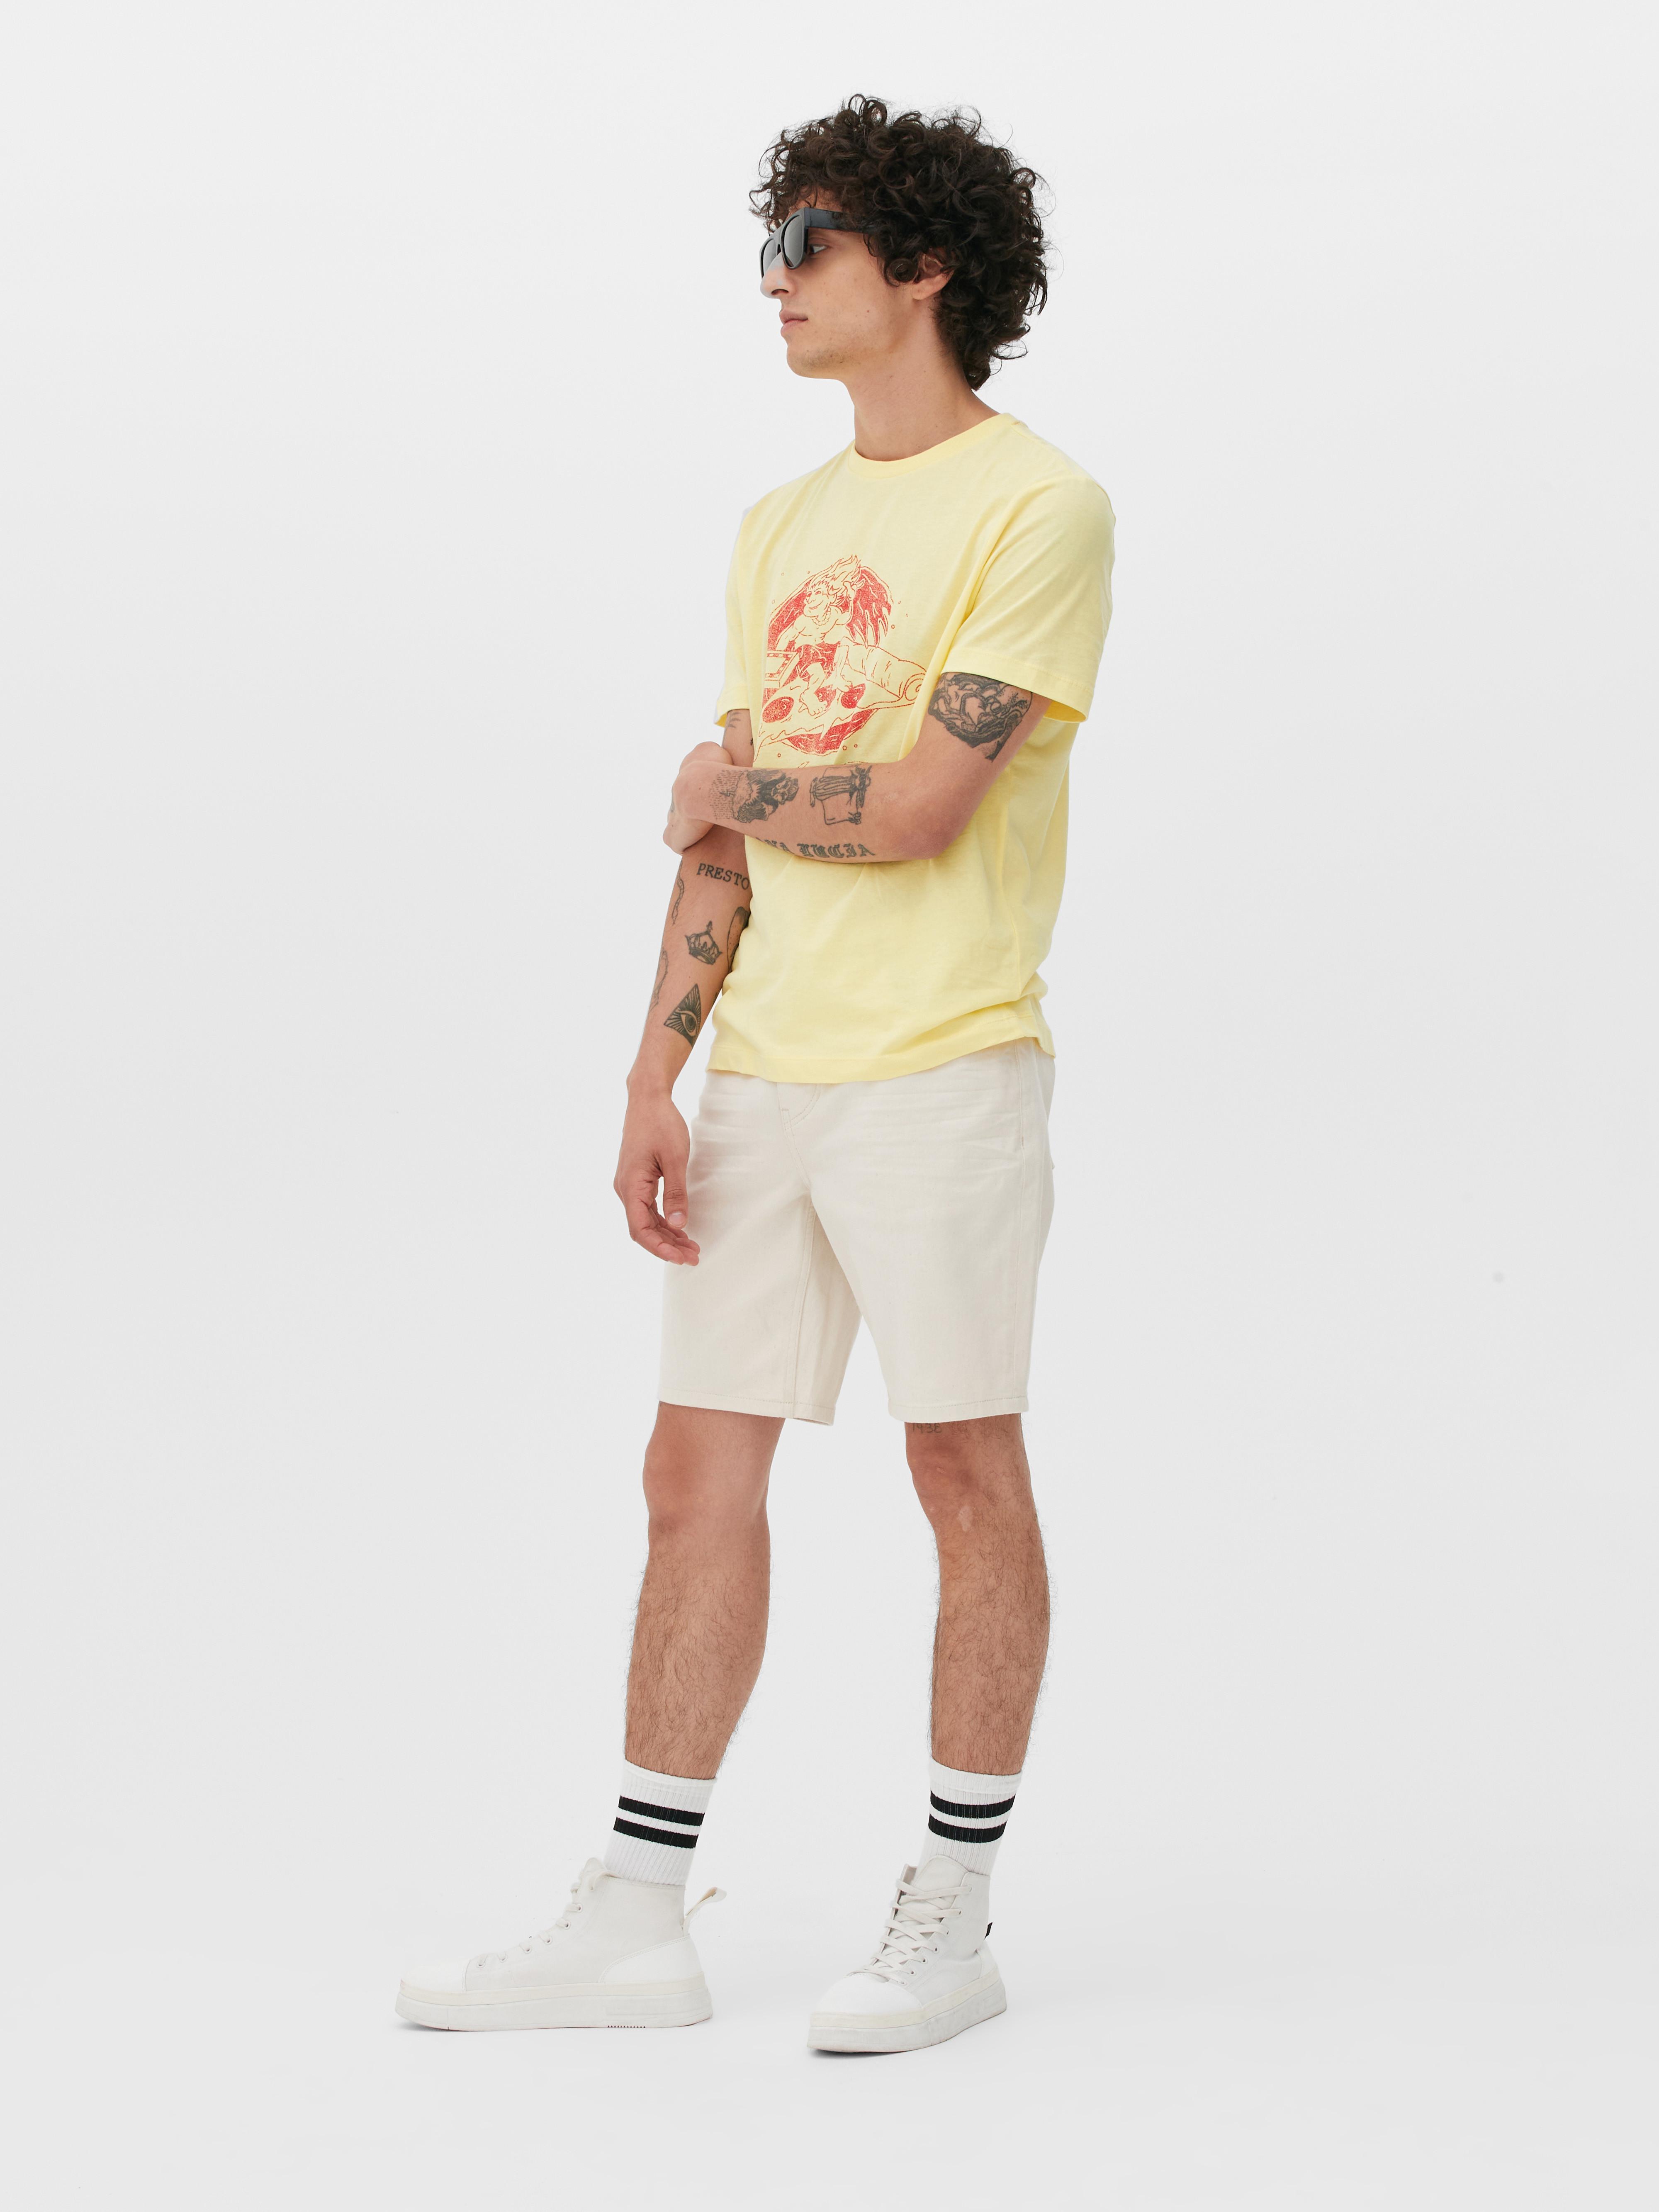 Stranger Things Surfer Boy Pizza T-shirt